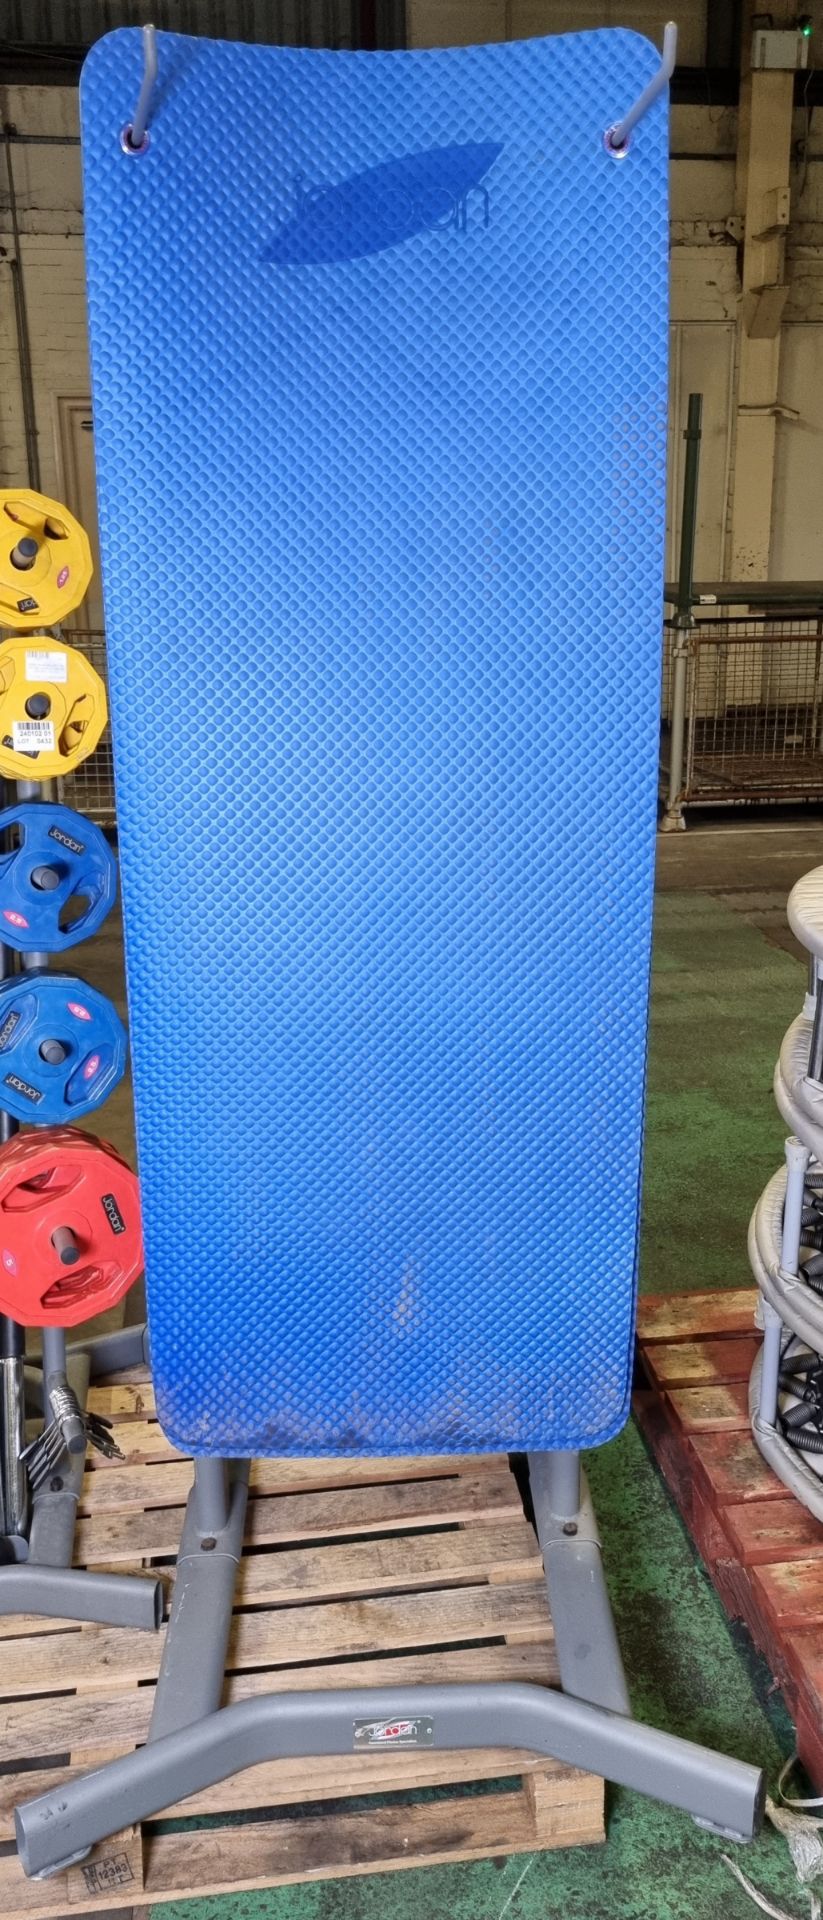 Jordan exercise mat storage rack with 13x mats - Bild 3 aus 3